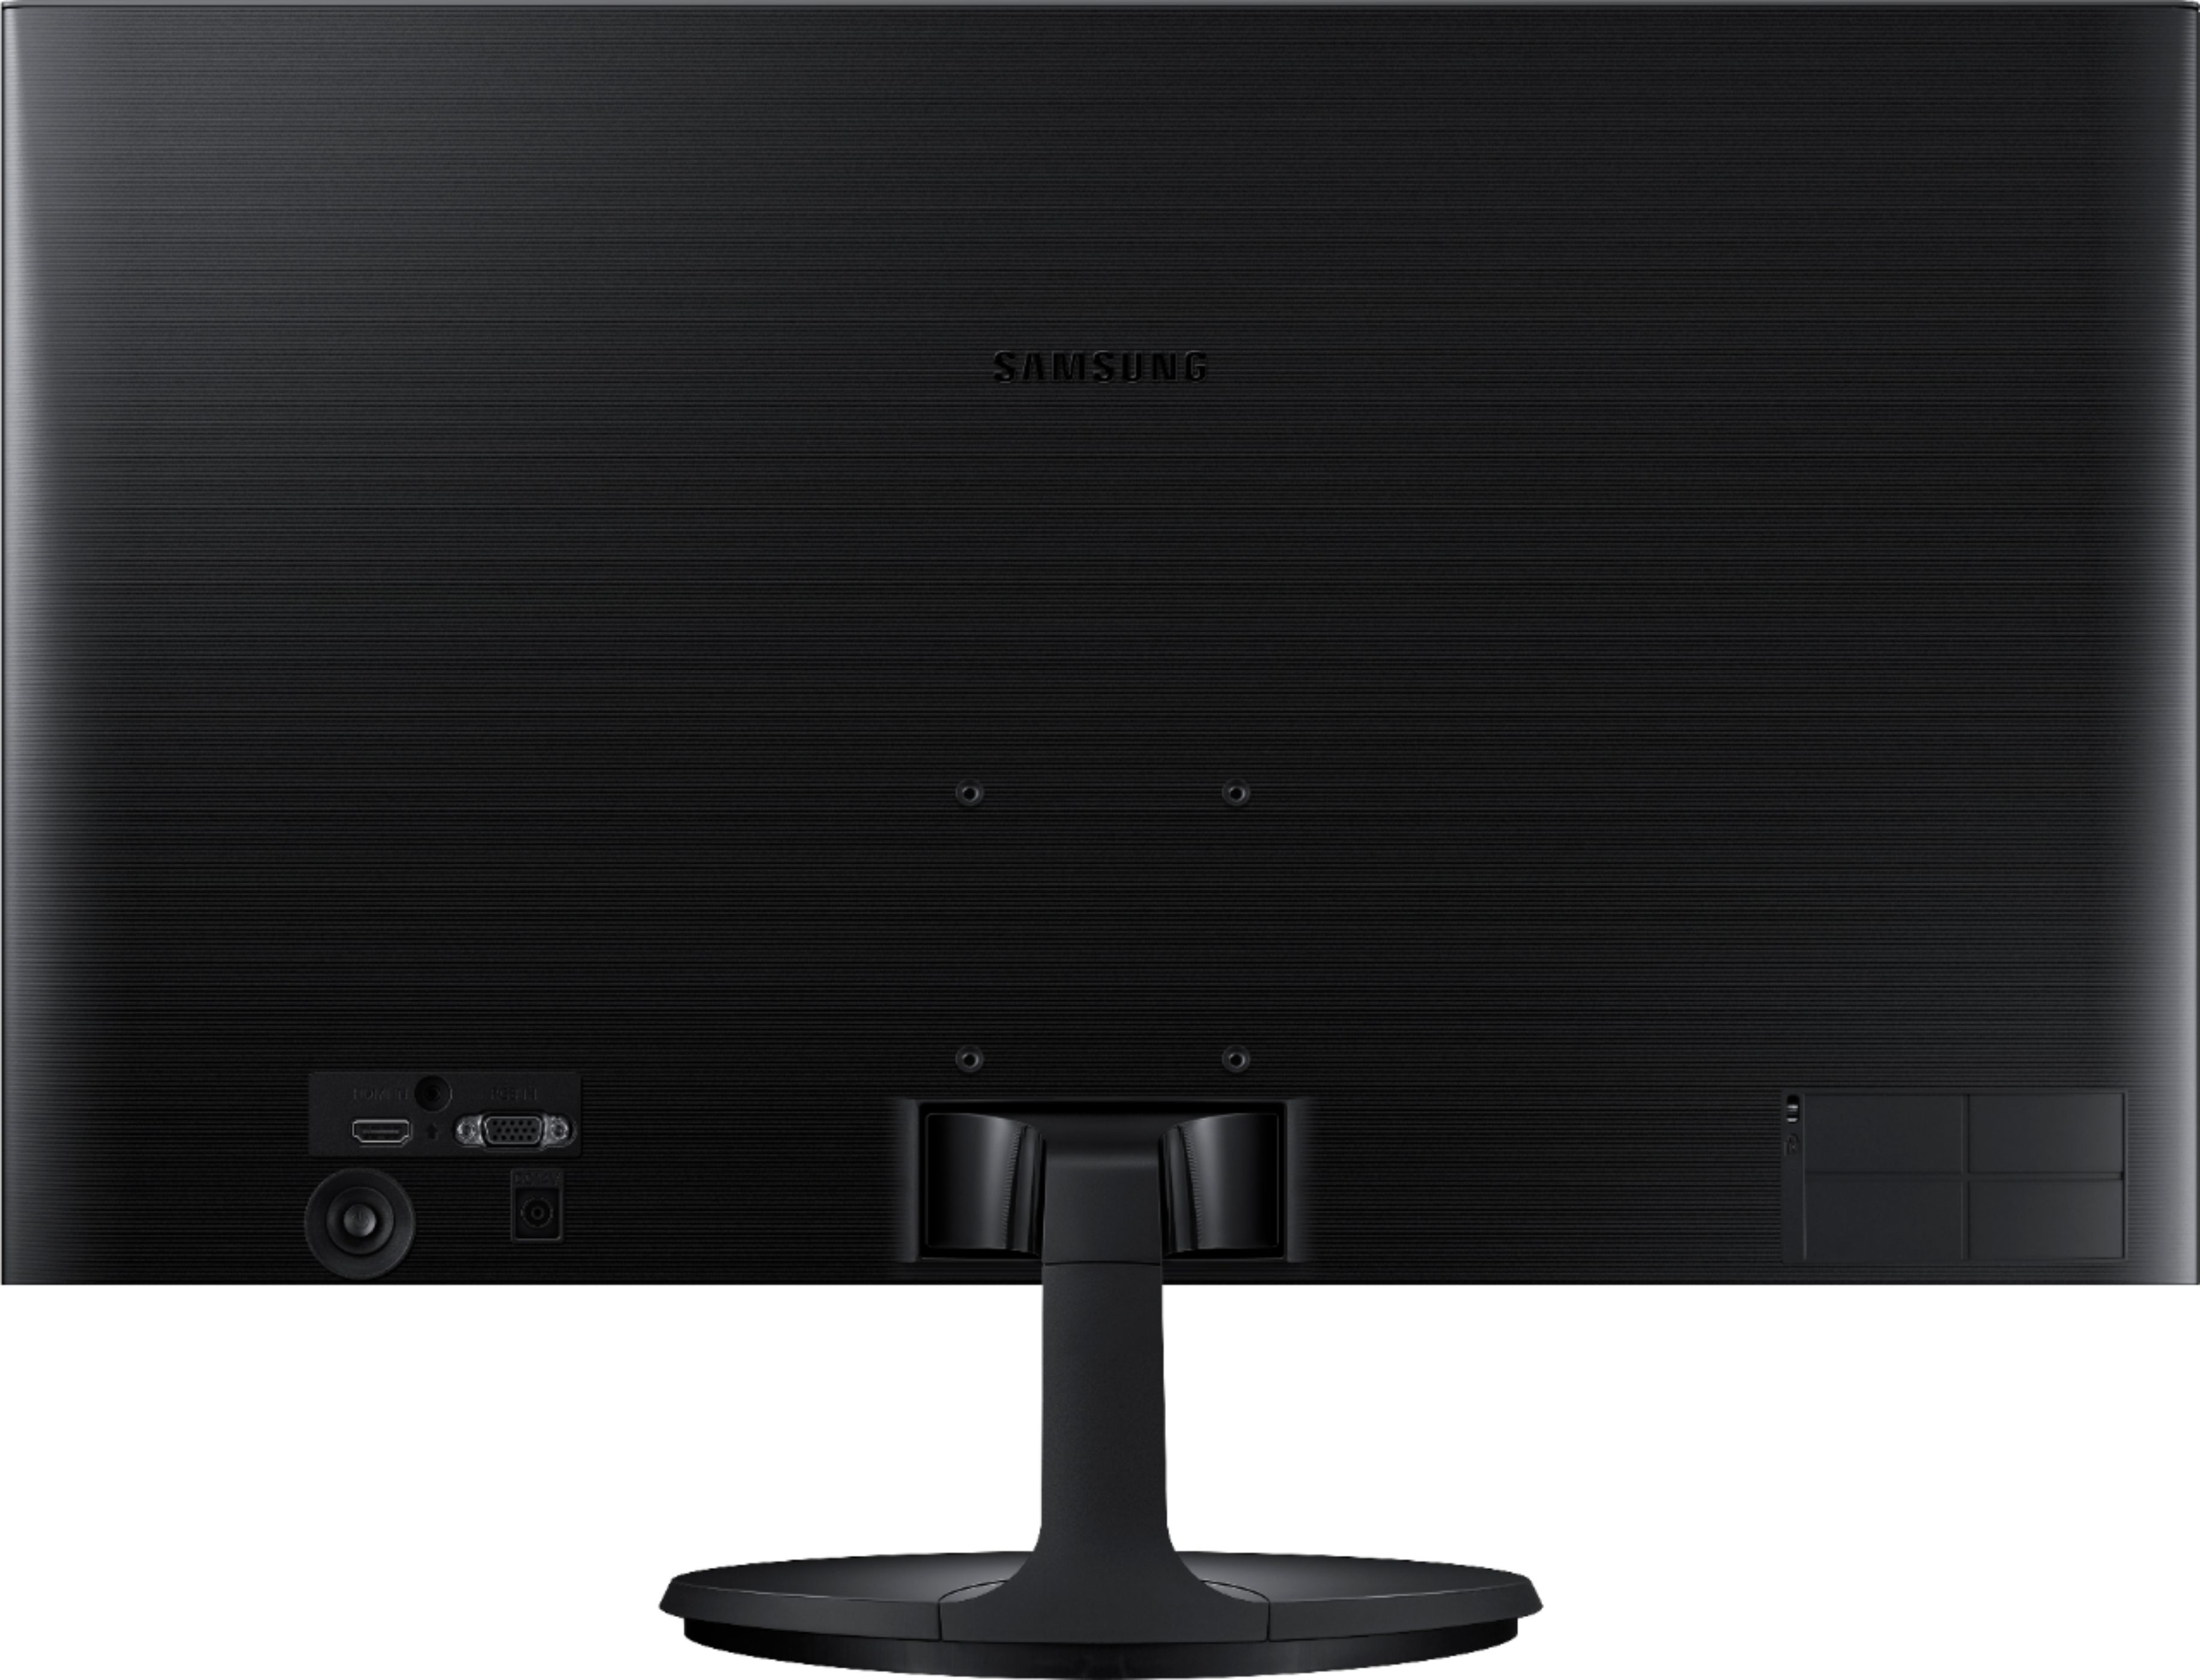 Buy Samsung 24 inch FHD Monitor (SF350)